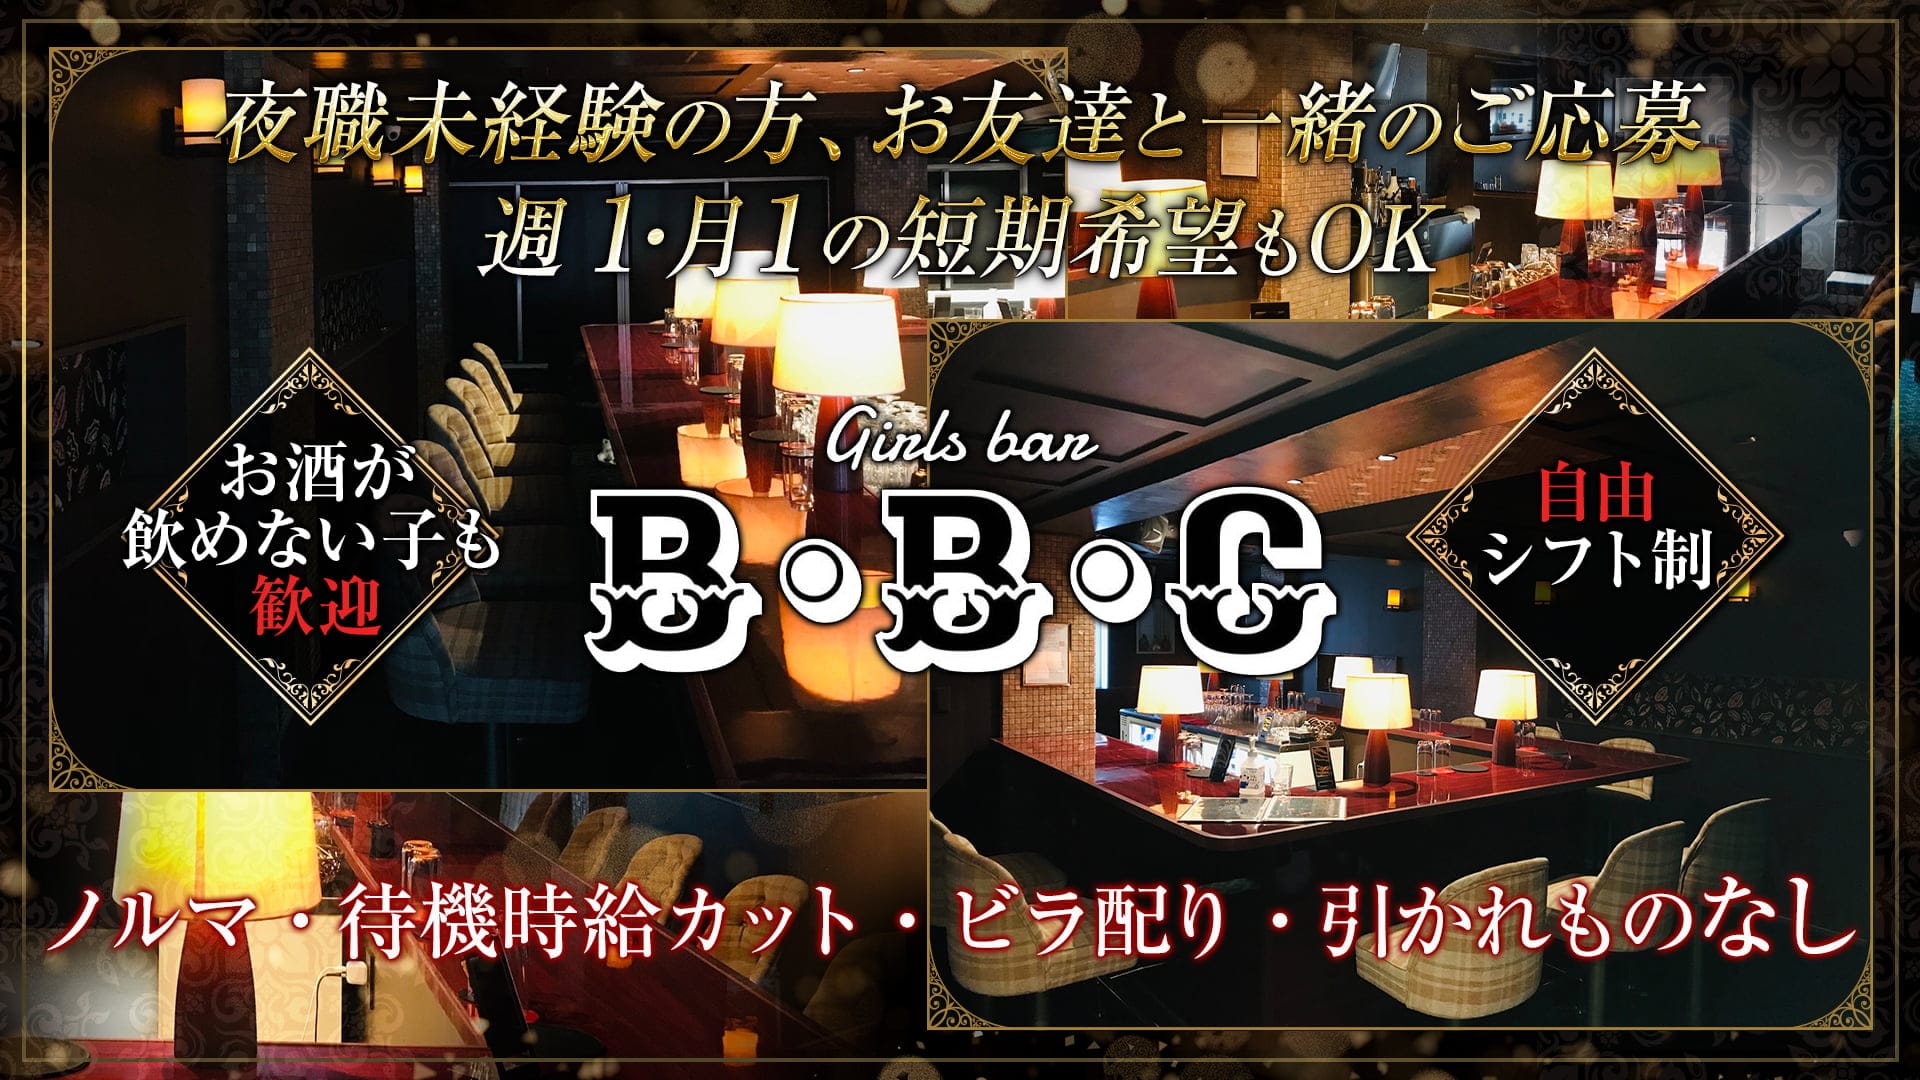 【24時間営業】Girls bar B・B・C(ビービーシー)【公式求人・体入情報】 歌舞伎町ガールズバー TOP画像